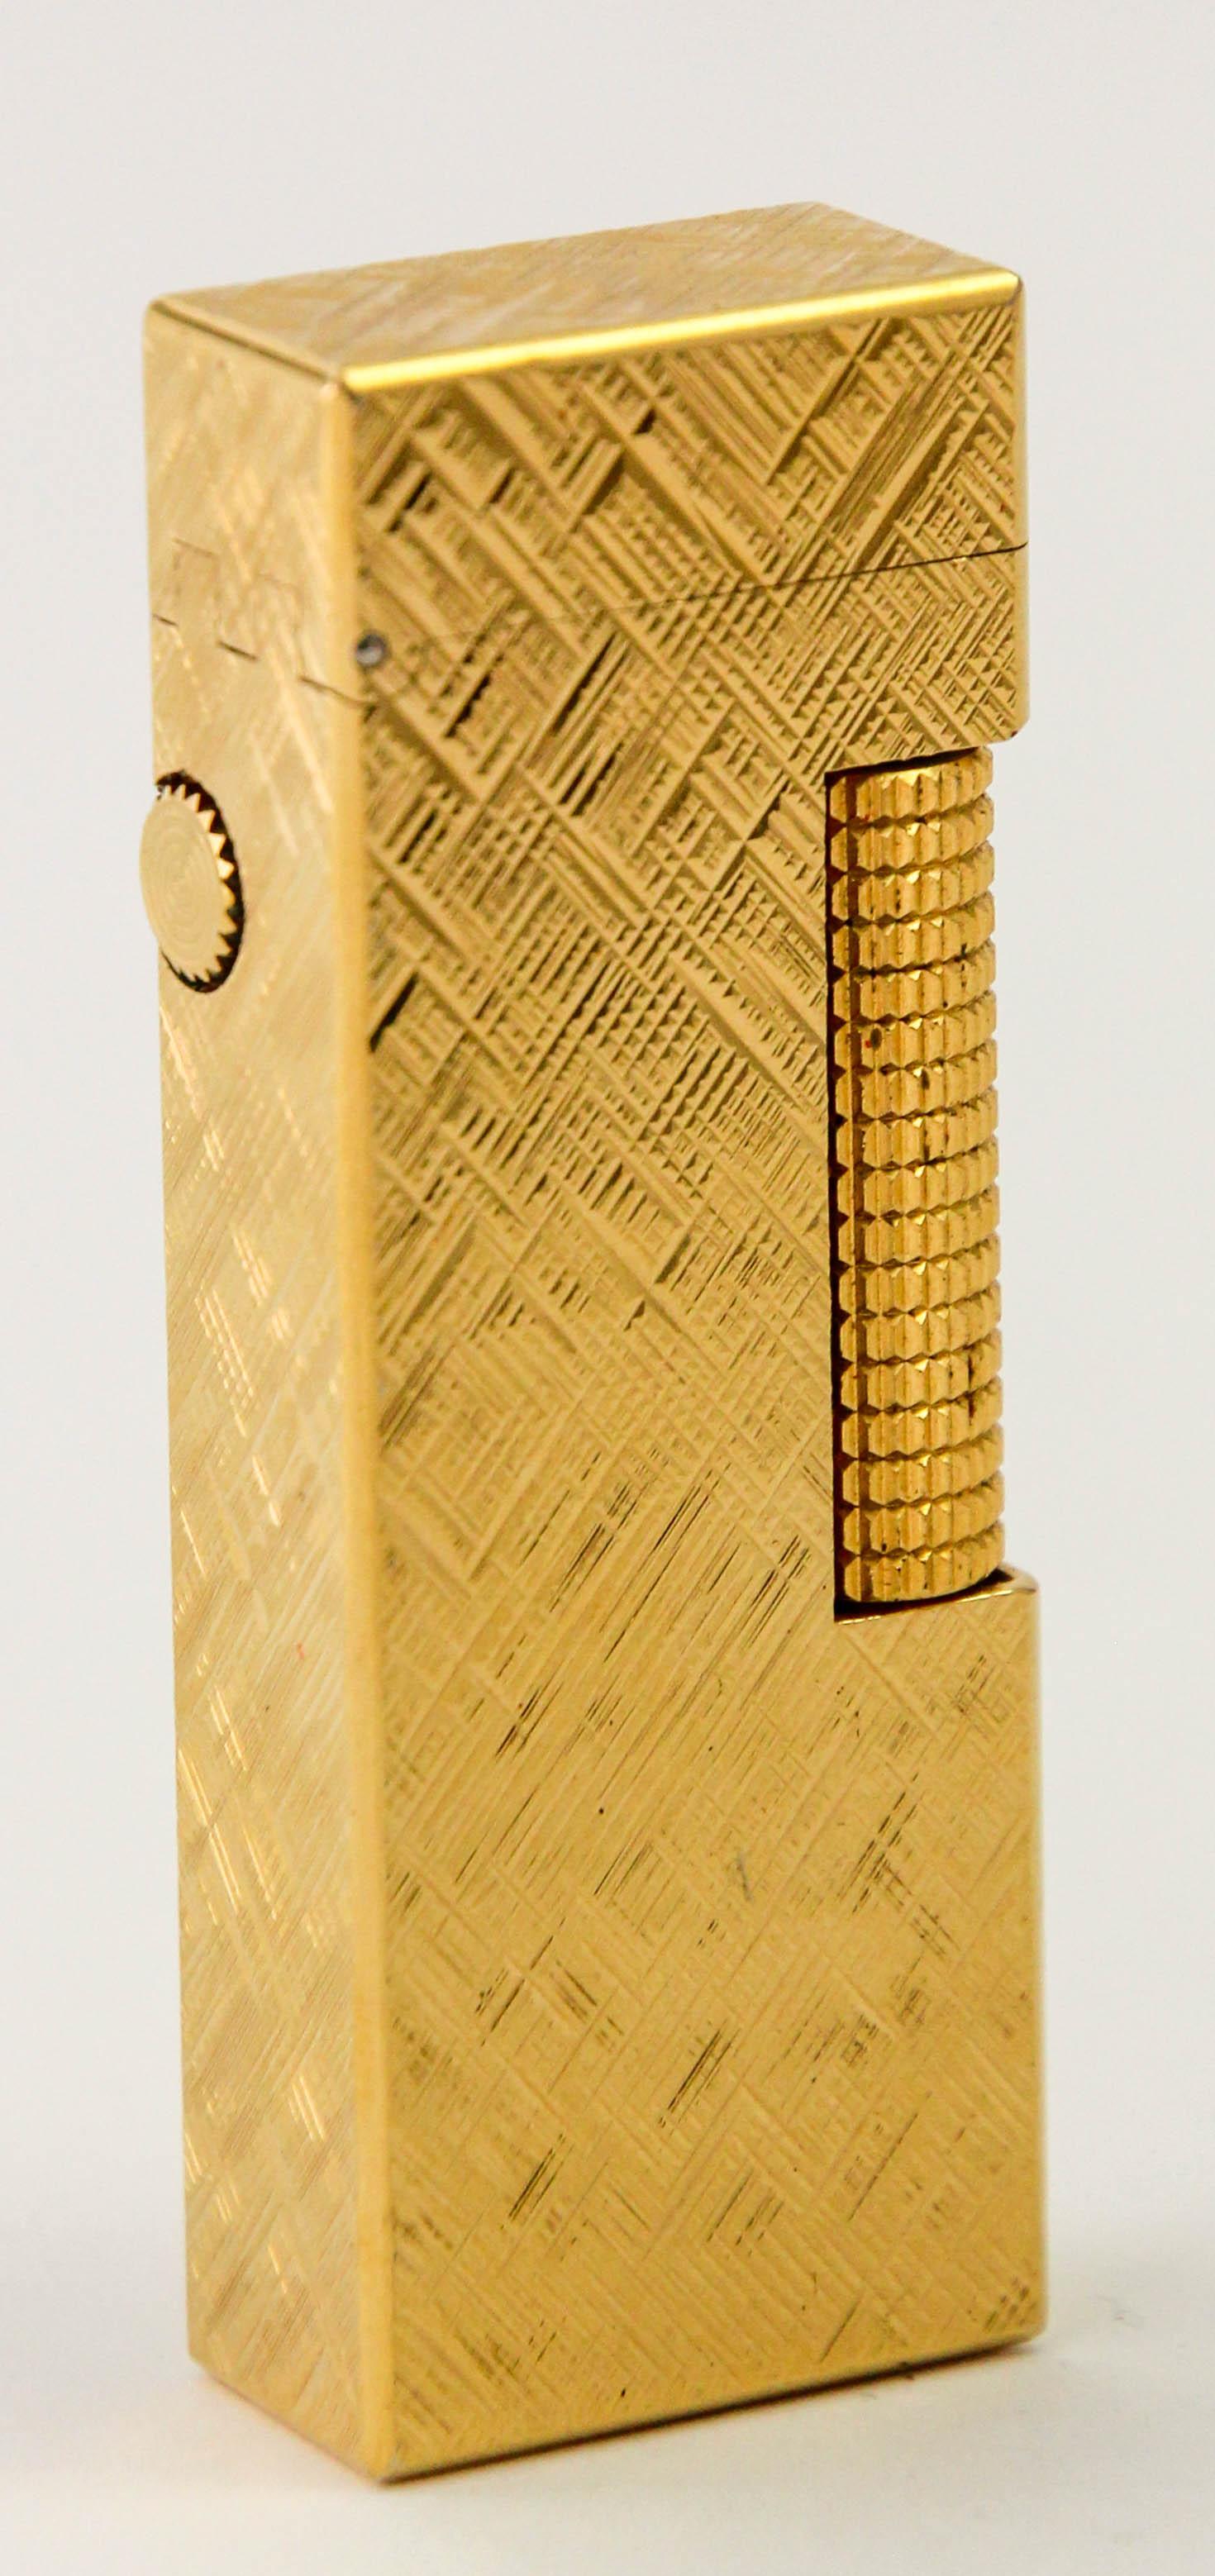 Seltene Vintage Iconic Alfred Dunhill vergoldet Feuerzeug in der Schweiz hergestellt Dieses schöne Dunhill Rollagas 24k vergoldet Florentine Muster Feuerzeug wurde in den 1980er Jahren hergestellt. Es handelt sich um ein wunderschönes Exemplar der